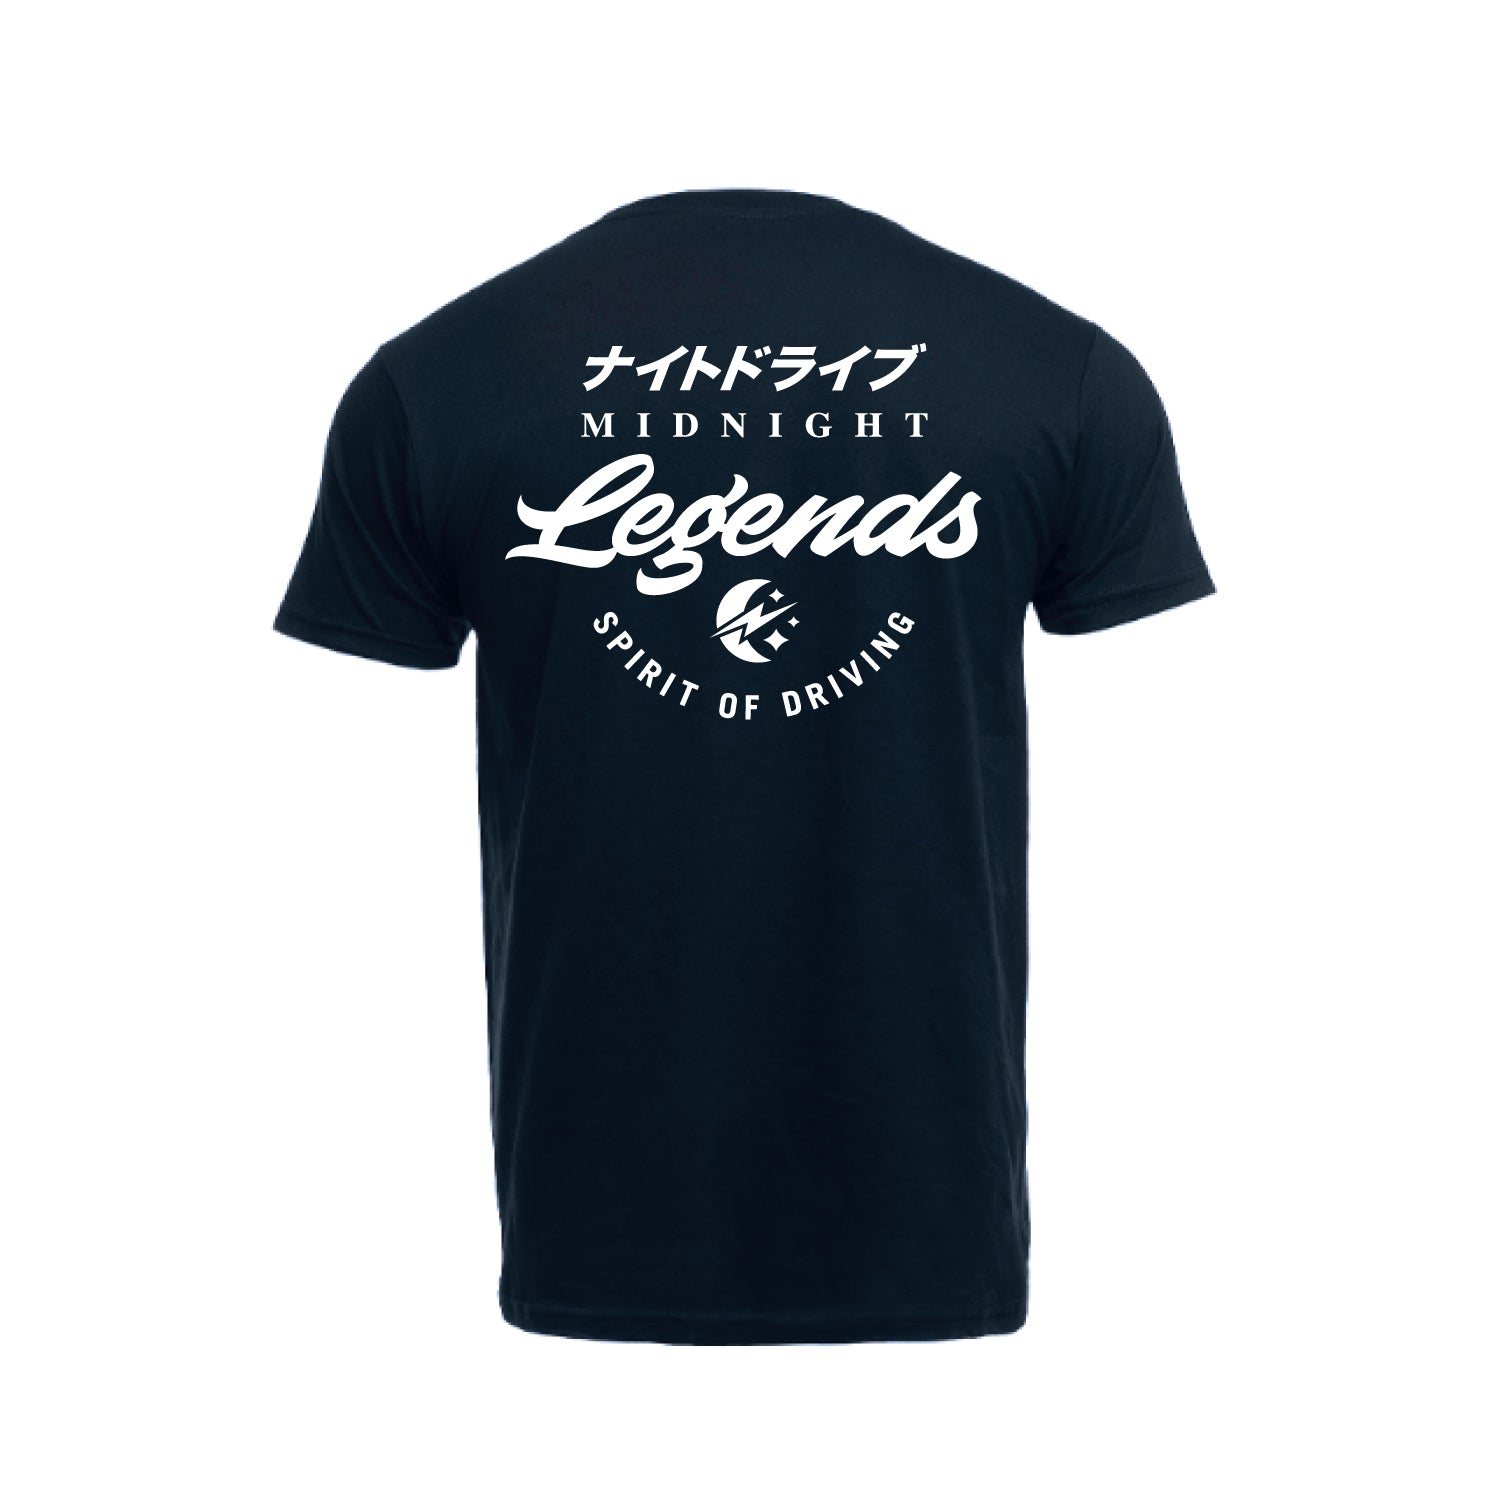 Tshirt - Navy Midnight Legends